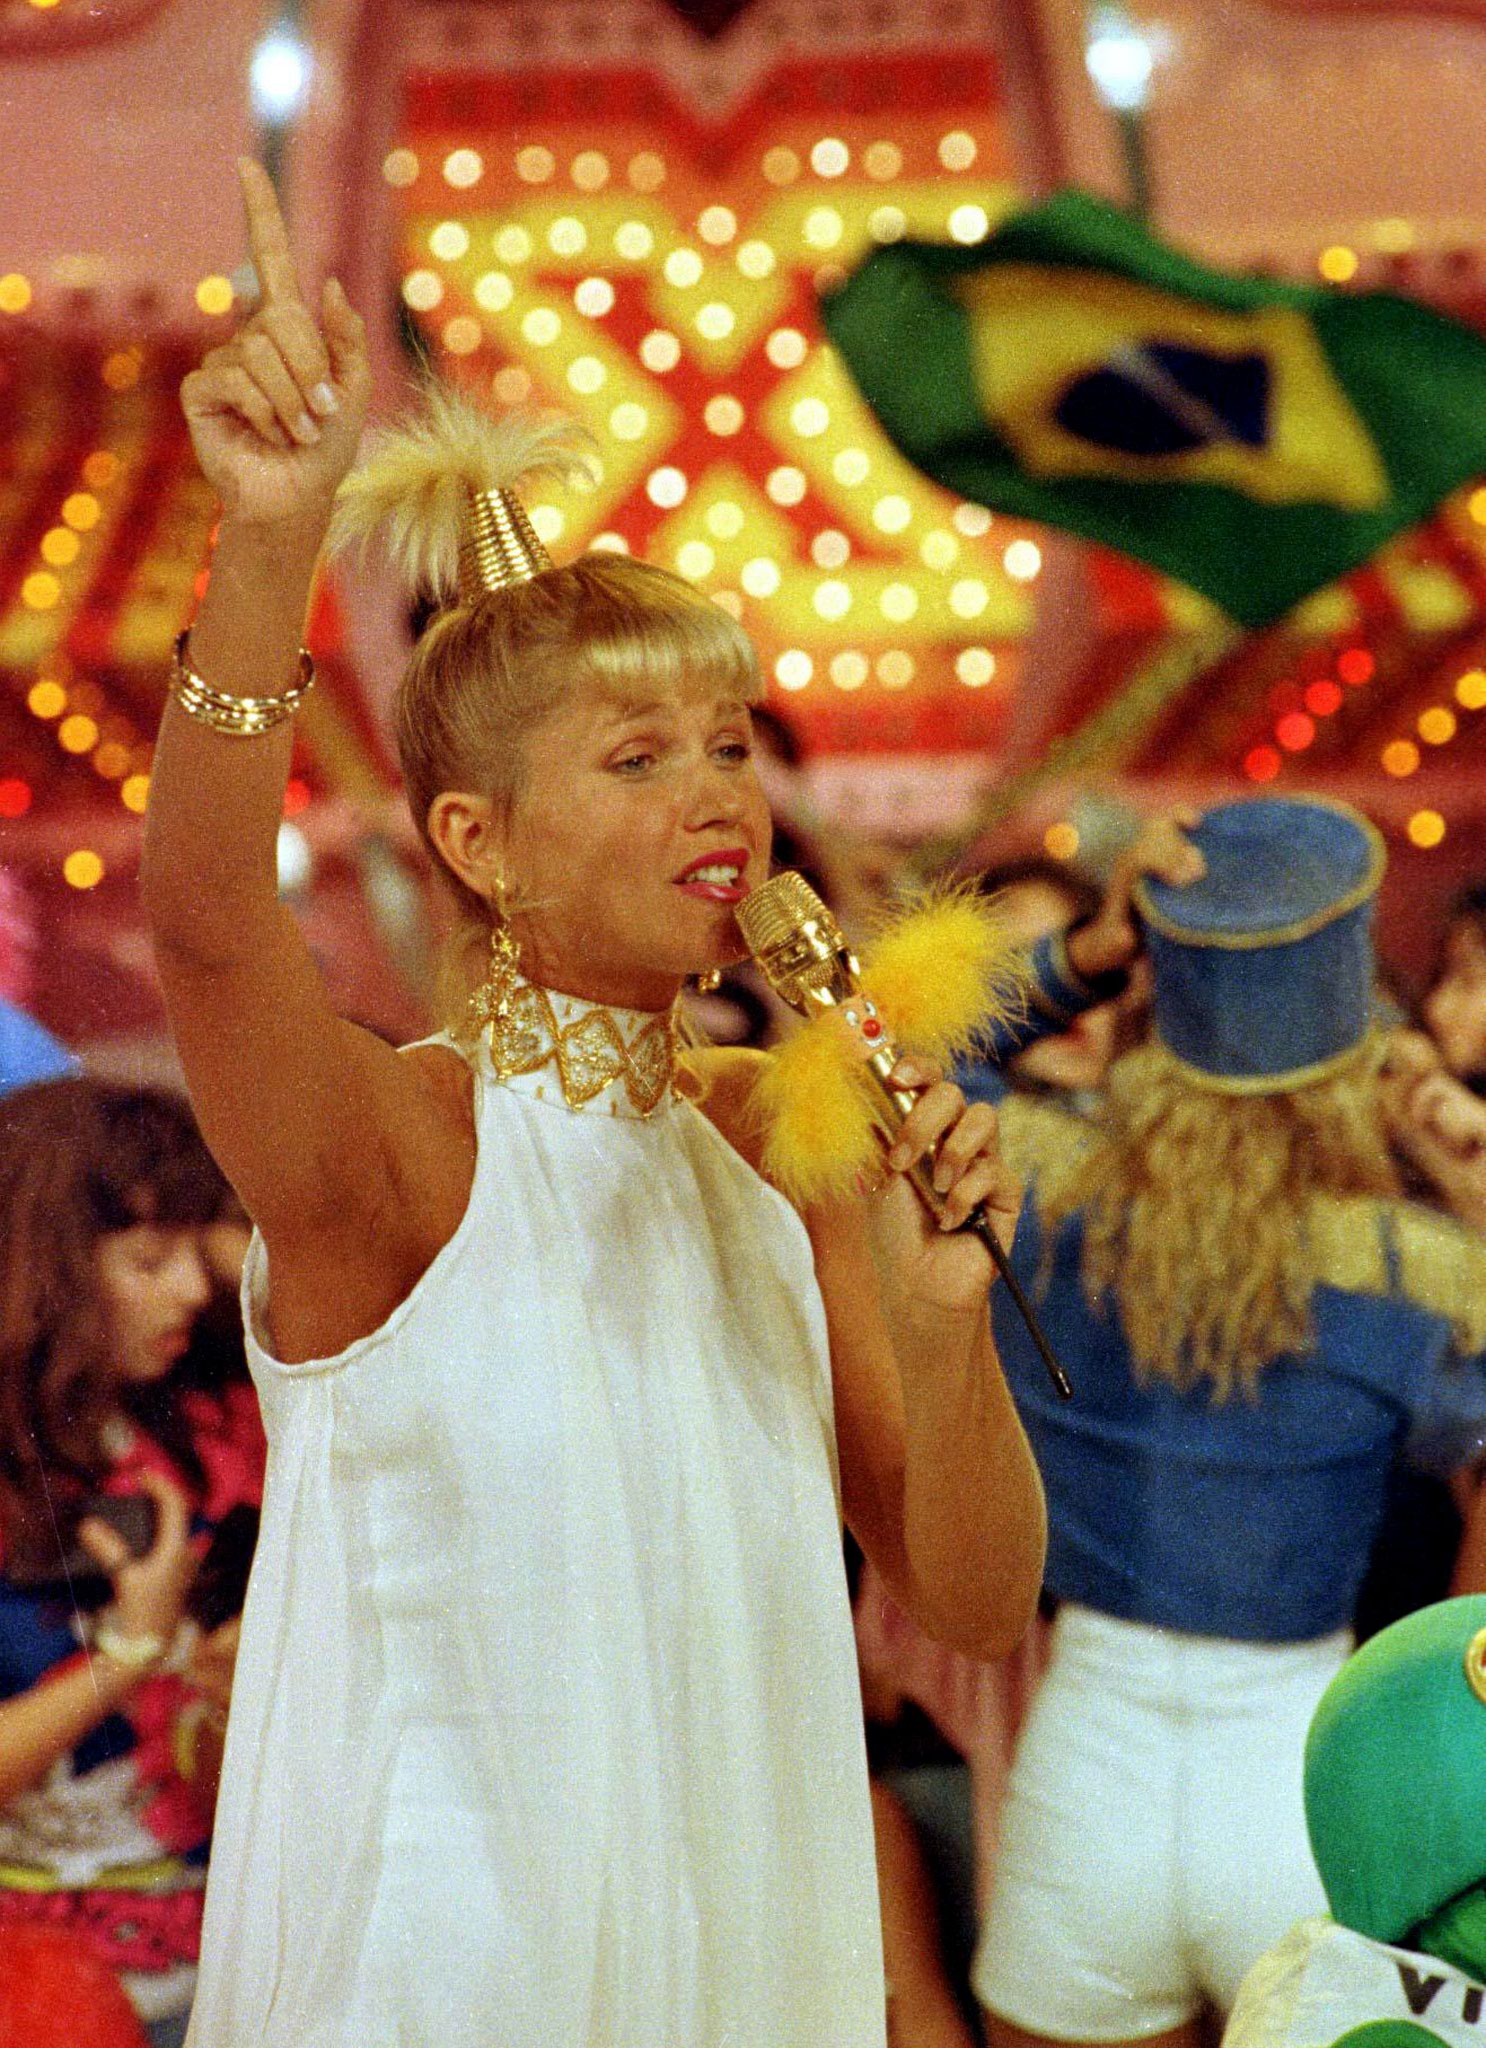 Xuxa puso de moda el peinado de “las colas de caballo” en las nenas y adolescentes. Los elásticos que usaba para sujetar el cabello se volvieron tan famosos que hasta la actualidad en Brasil se los llama “xuxinhas”.
